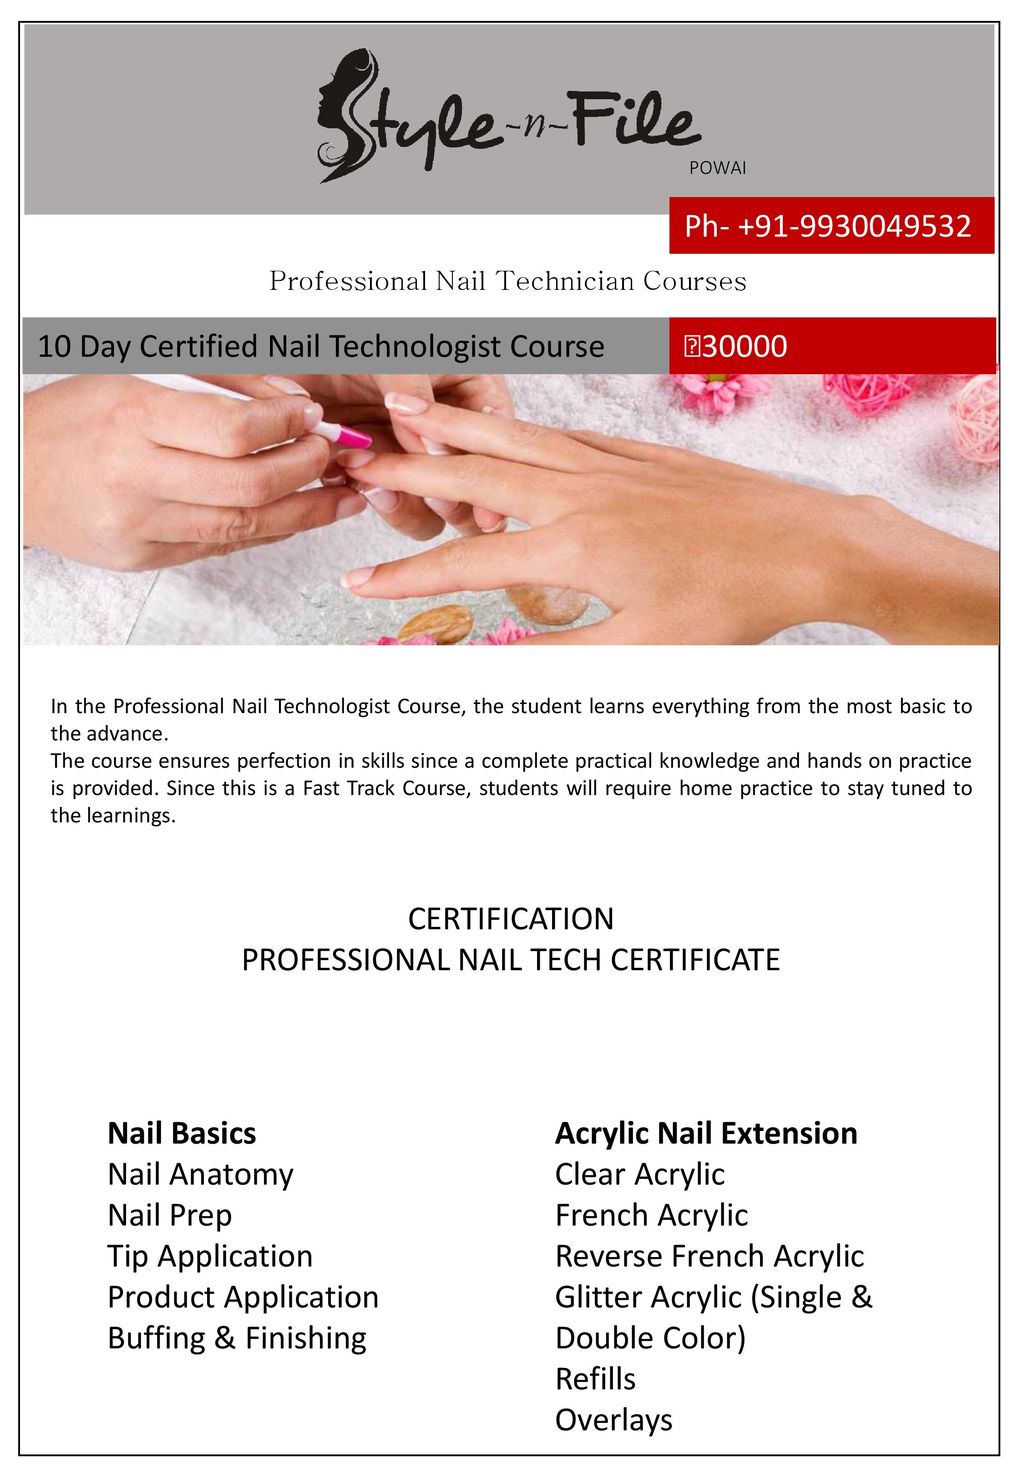 Professional Nail Art Courses in Delhi - Christine Valmy Delhi